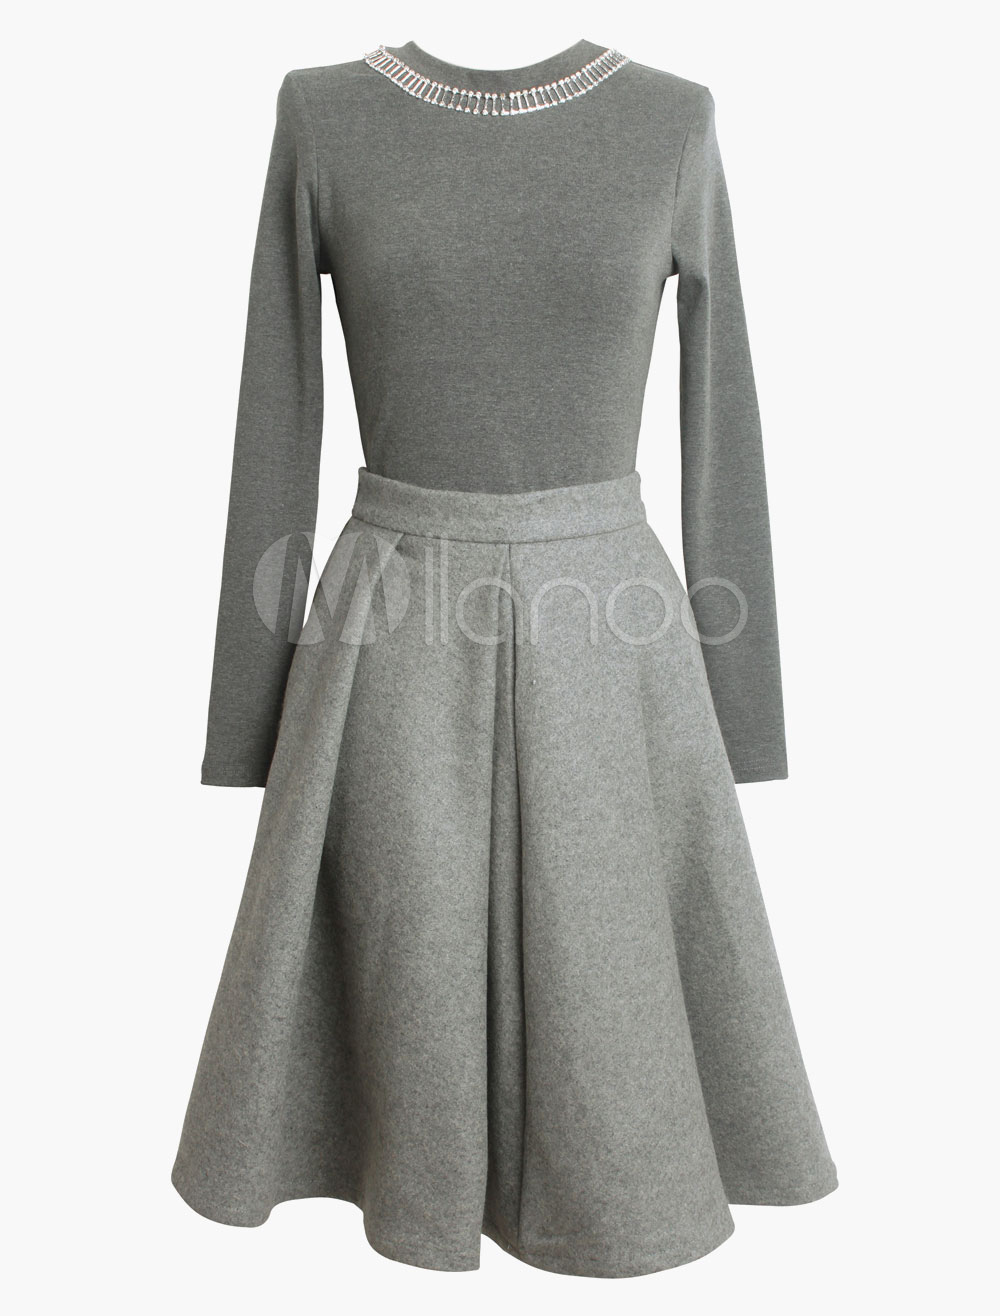 High-waisted Flared Wool Blend Skirt - Milanoo.com